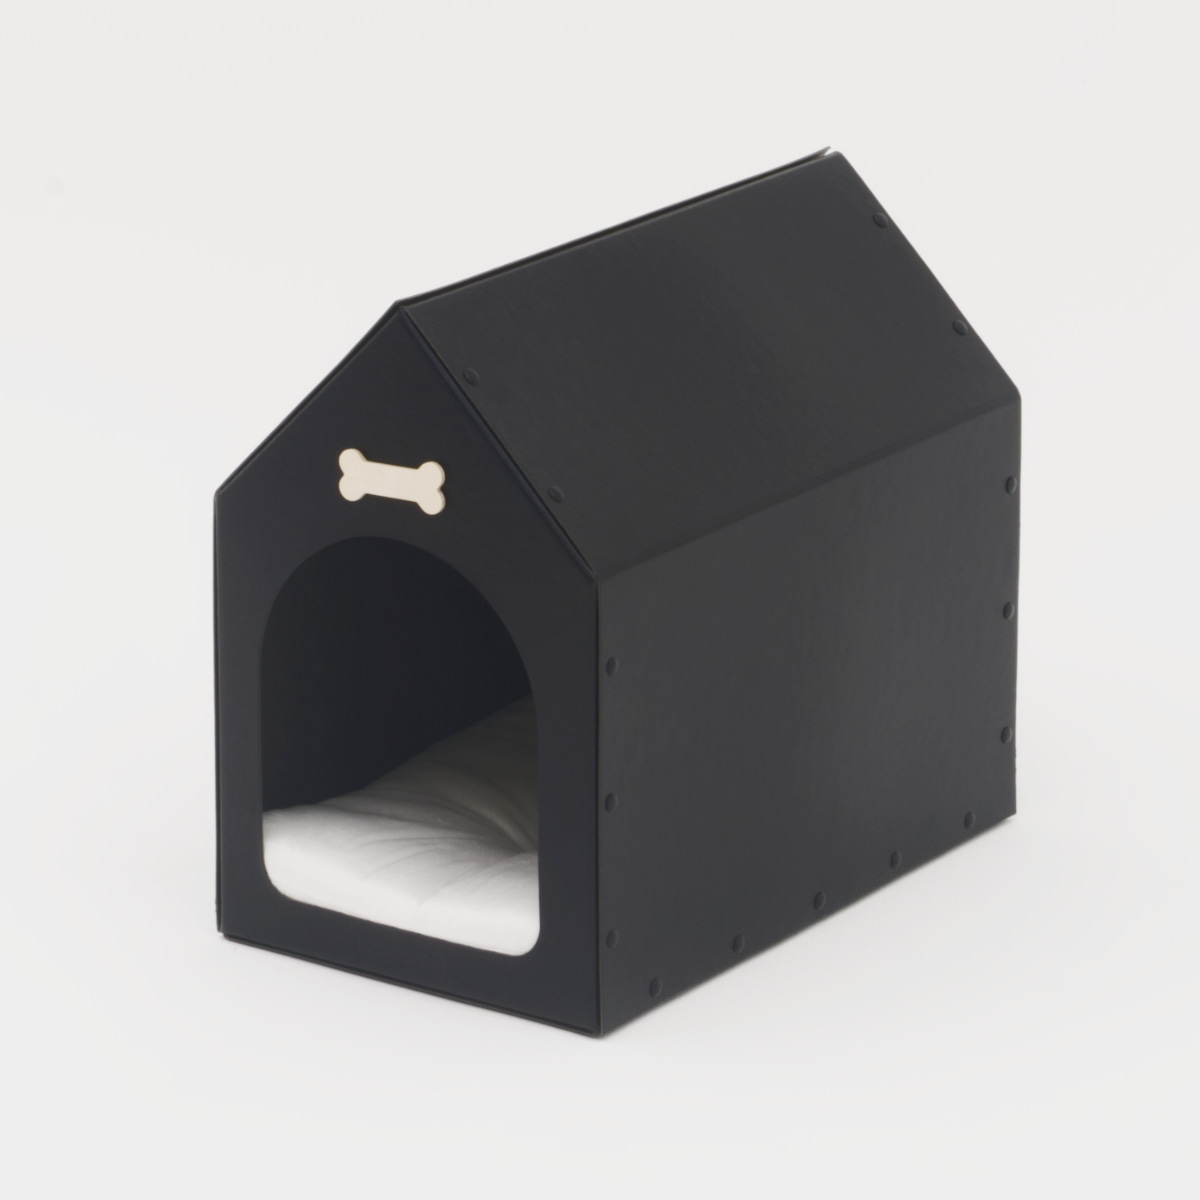 코쿠모노 빈티지 디자인 숨숨집 고양이 하우스 오픈형 입구